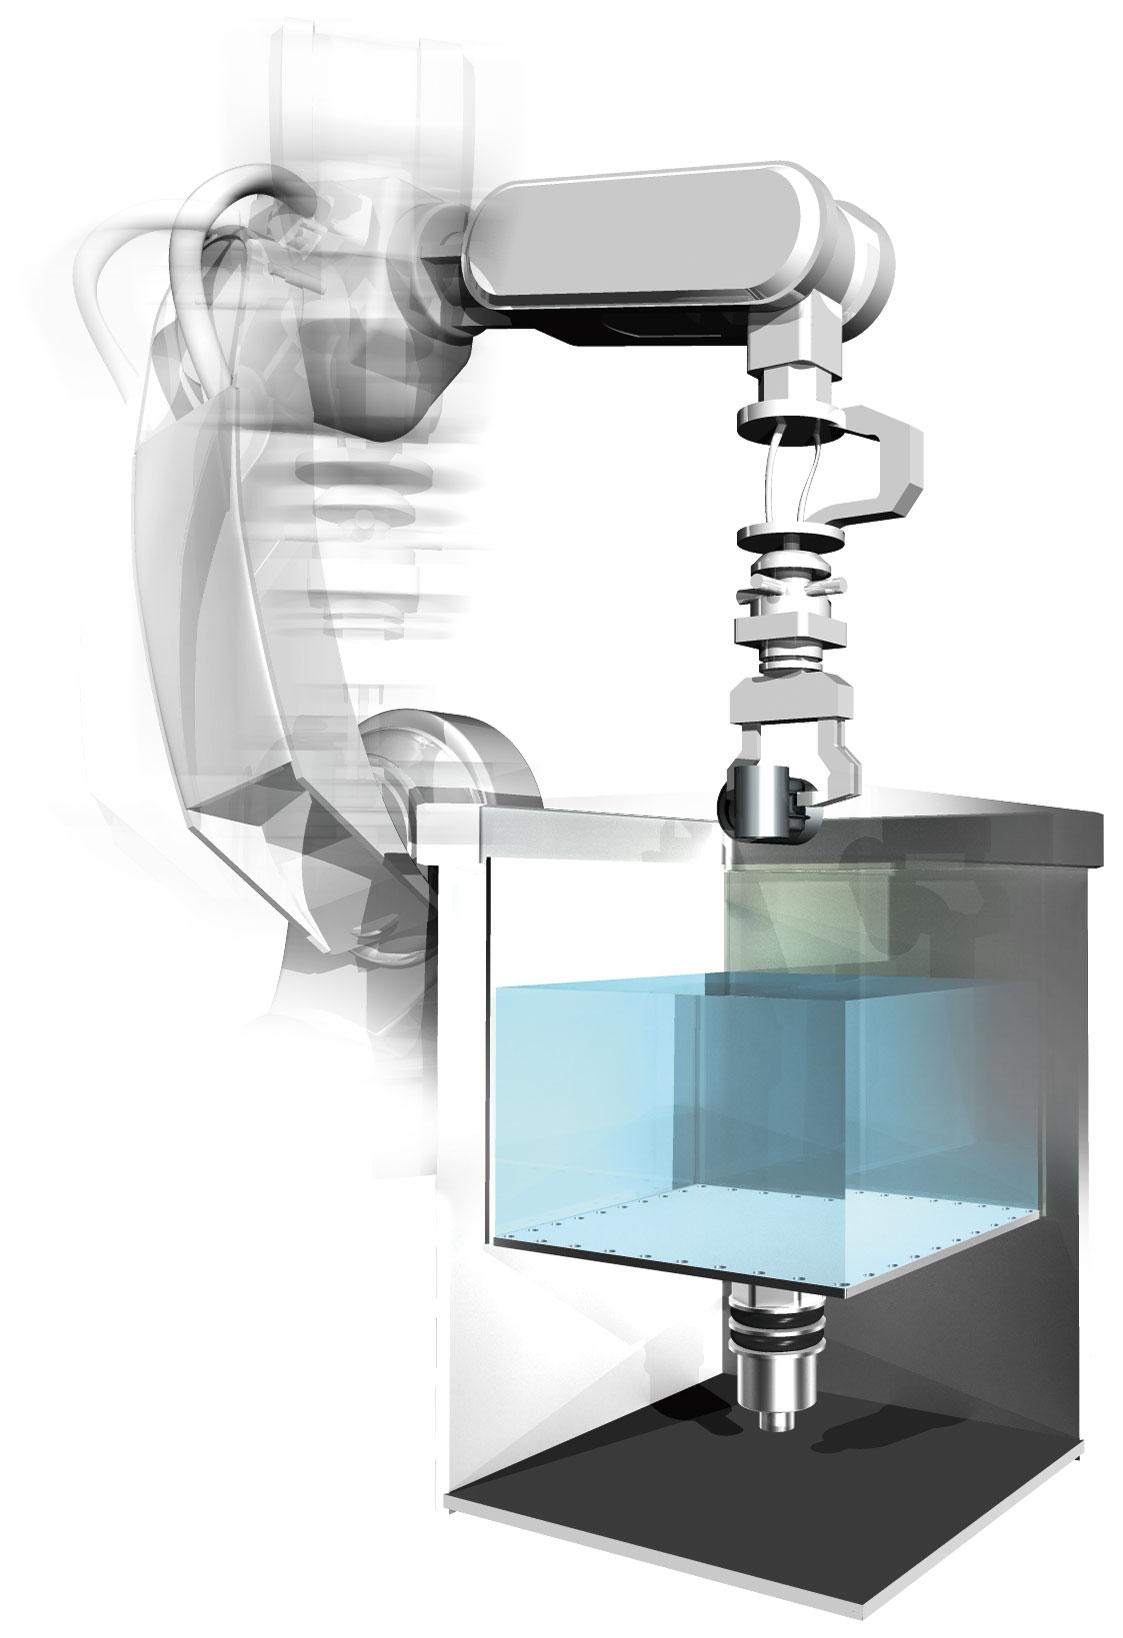 ロボット組み込み型洗浄槽-修正版-合成